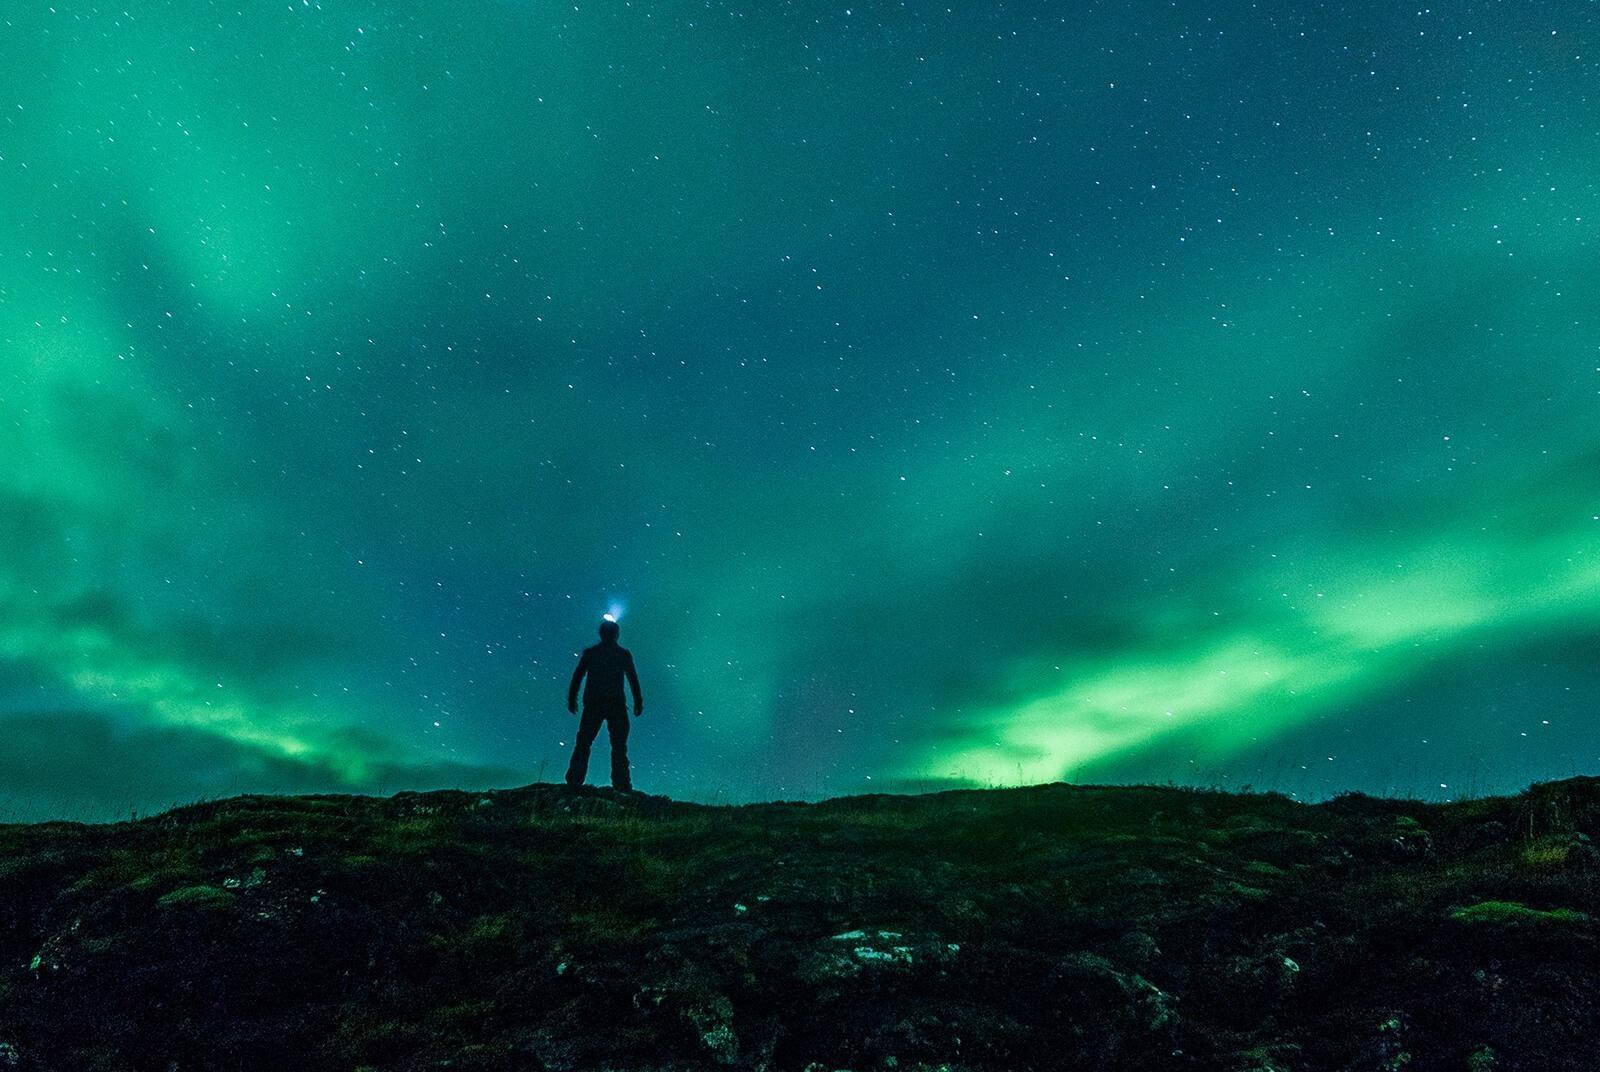 Vente a ver las auroras boreales durante la nochevieja en Islandia.